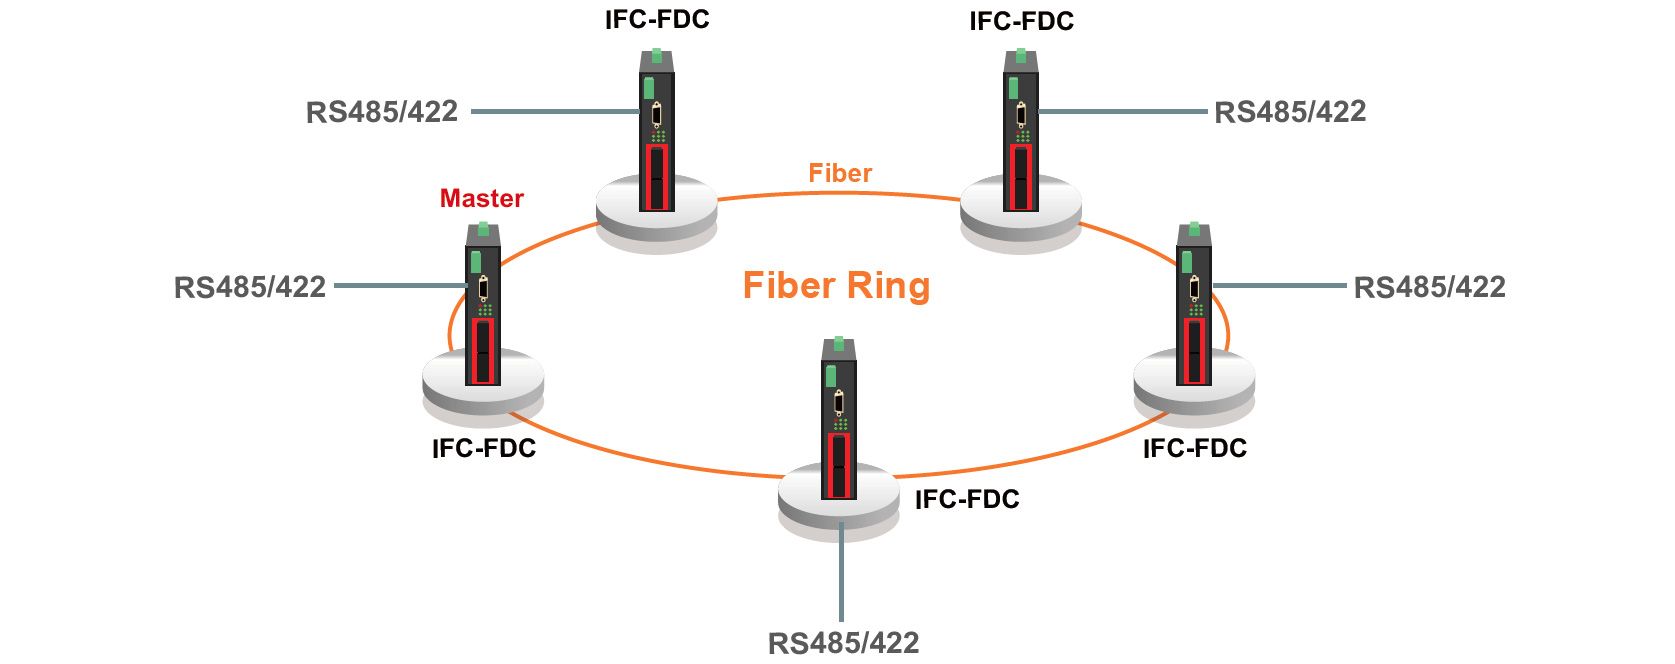 IFC-FDC Topologia e Aplicação de Redundância em Anel de Fibra